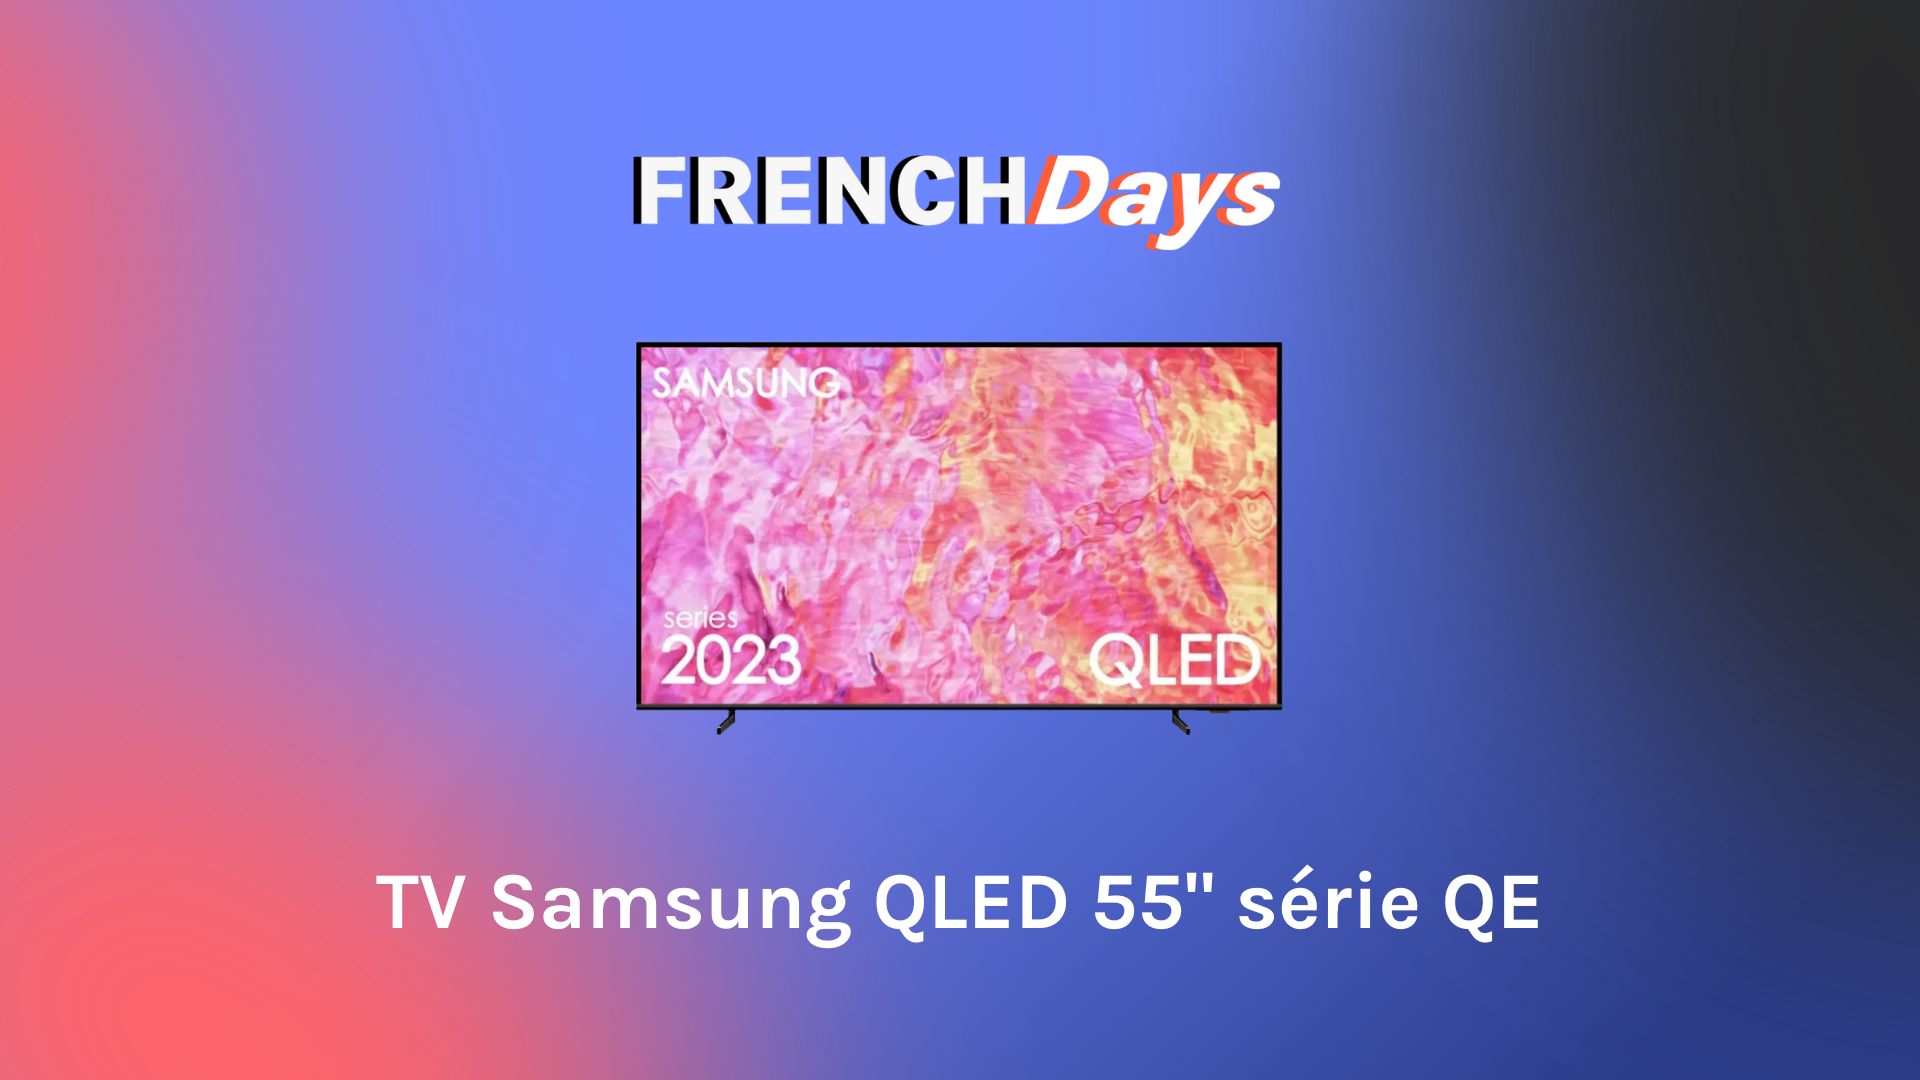 Rapide, performant et petit prix : le bon plan SSD des French Days est là